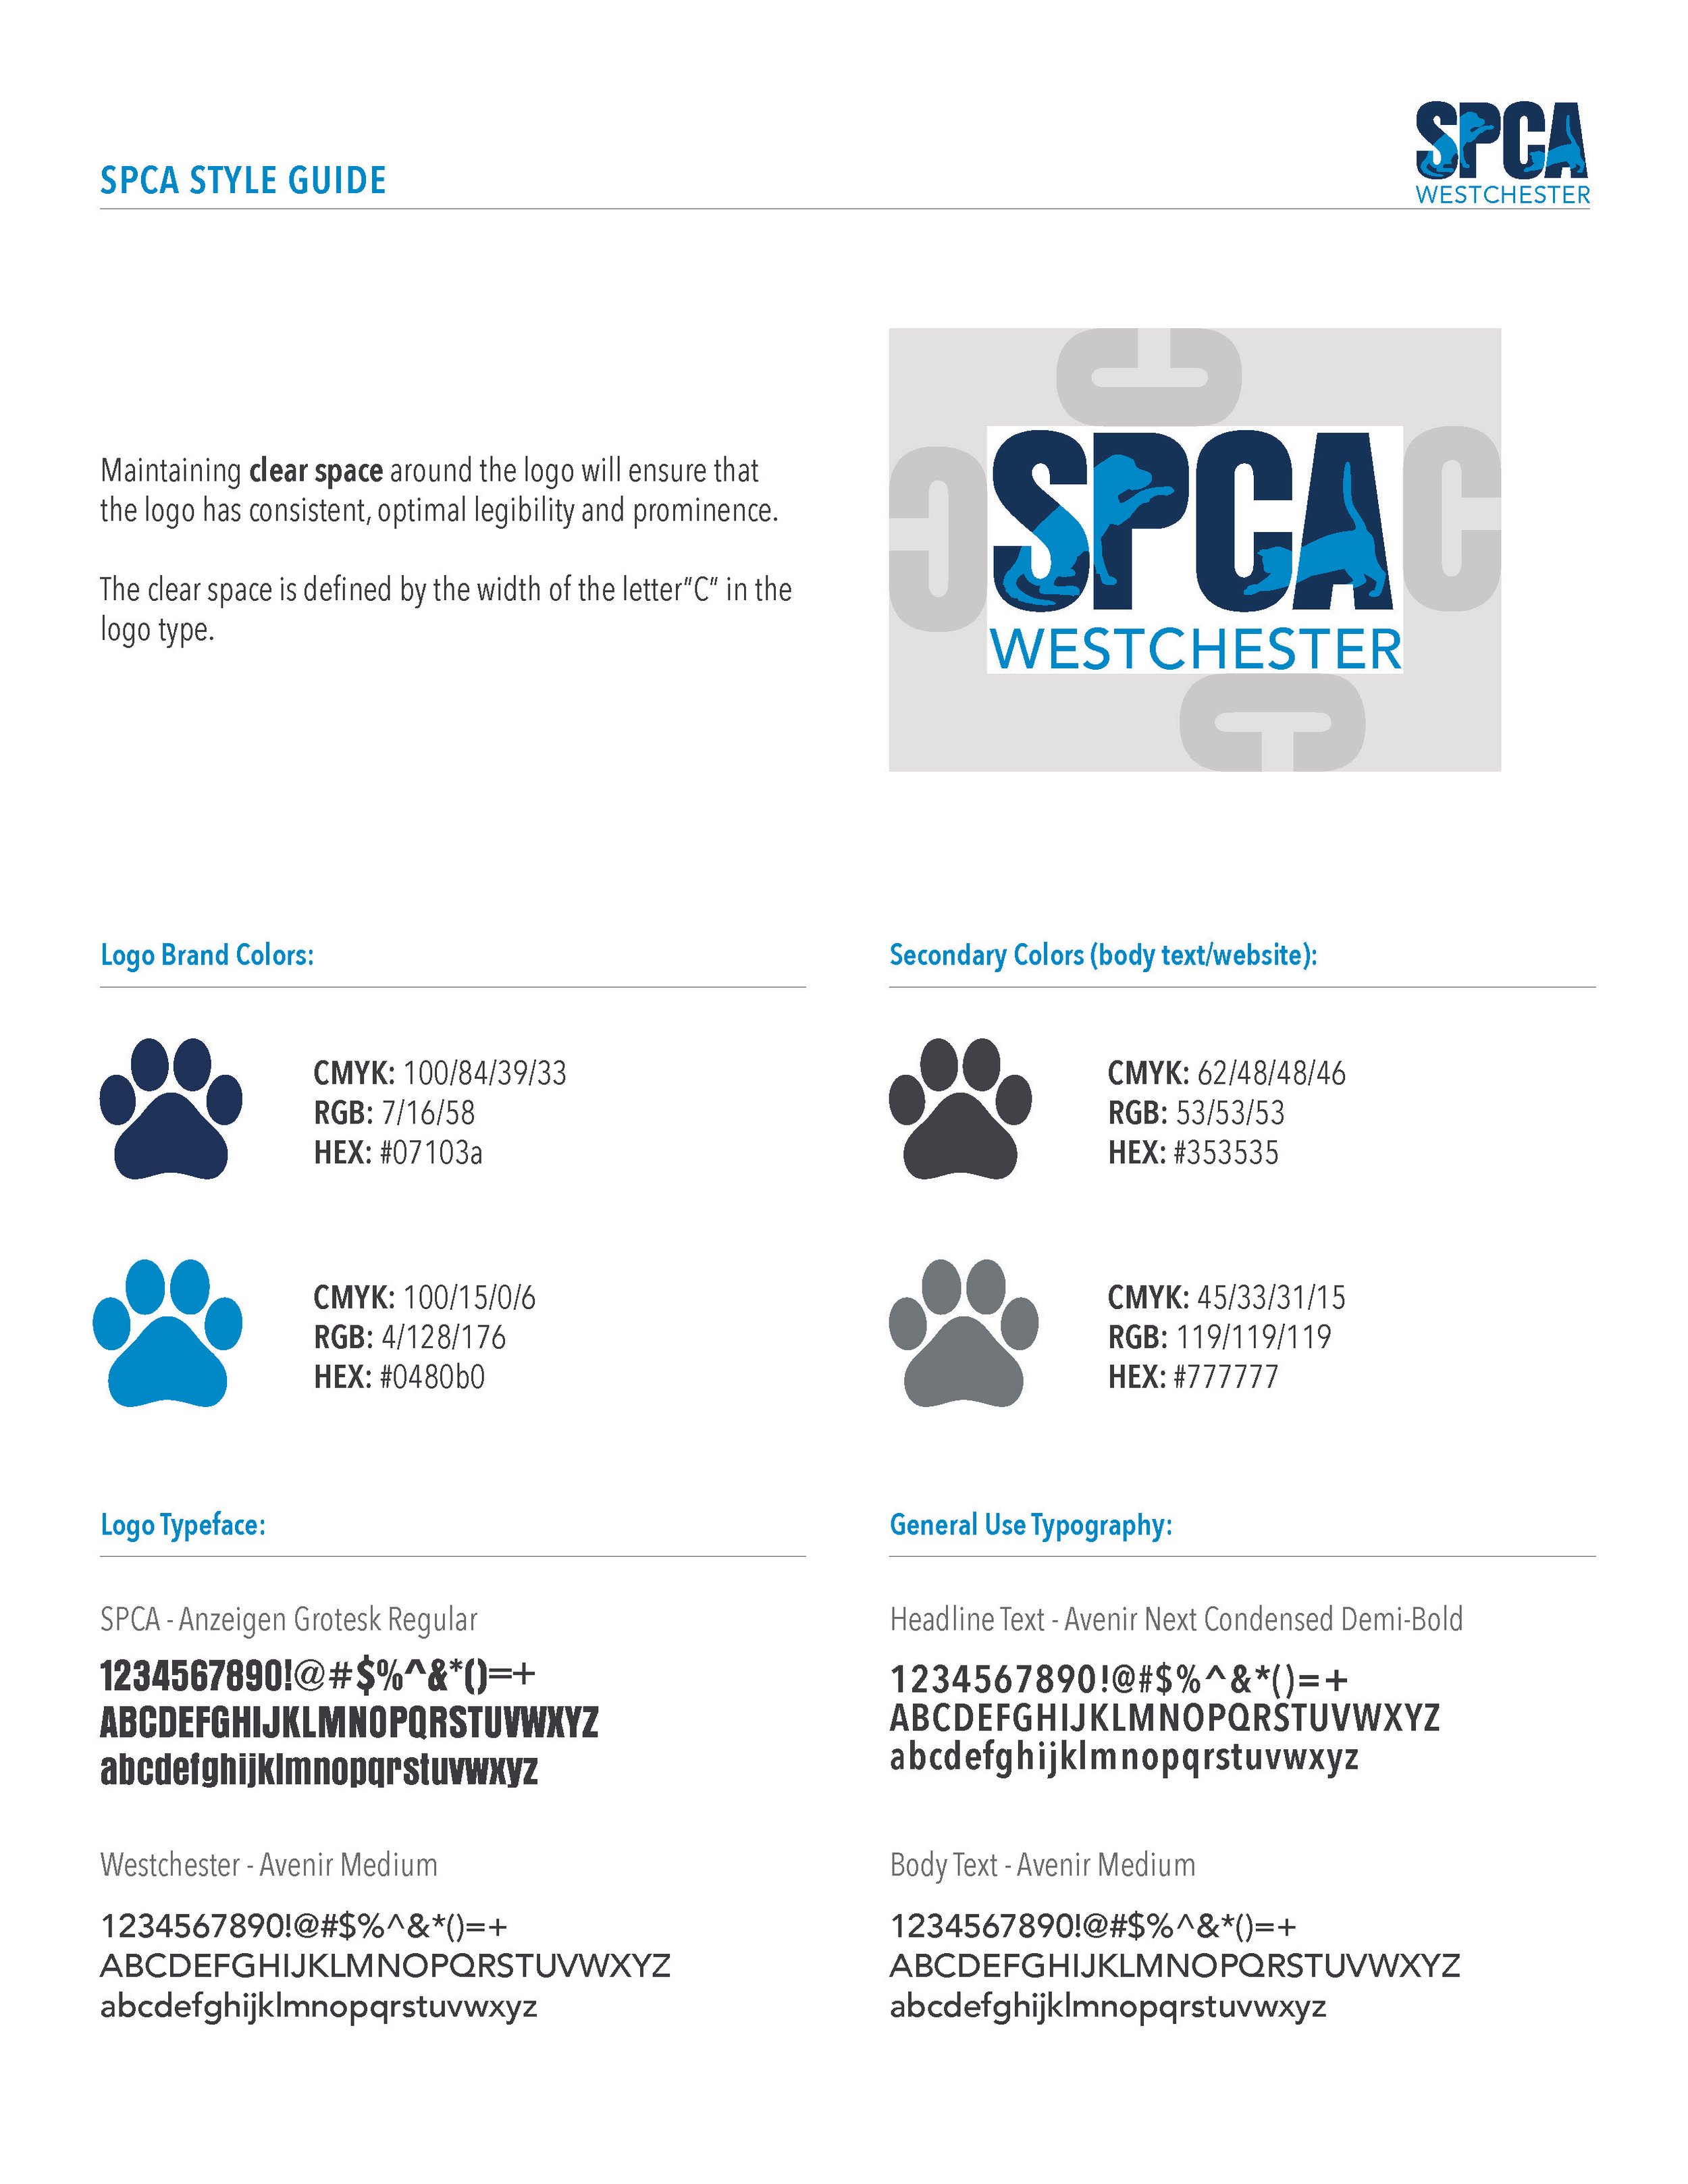 SPCA_Style_Guide_Sheet_V1.jpg